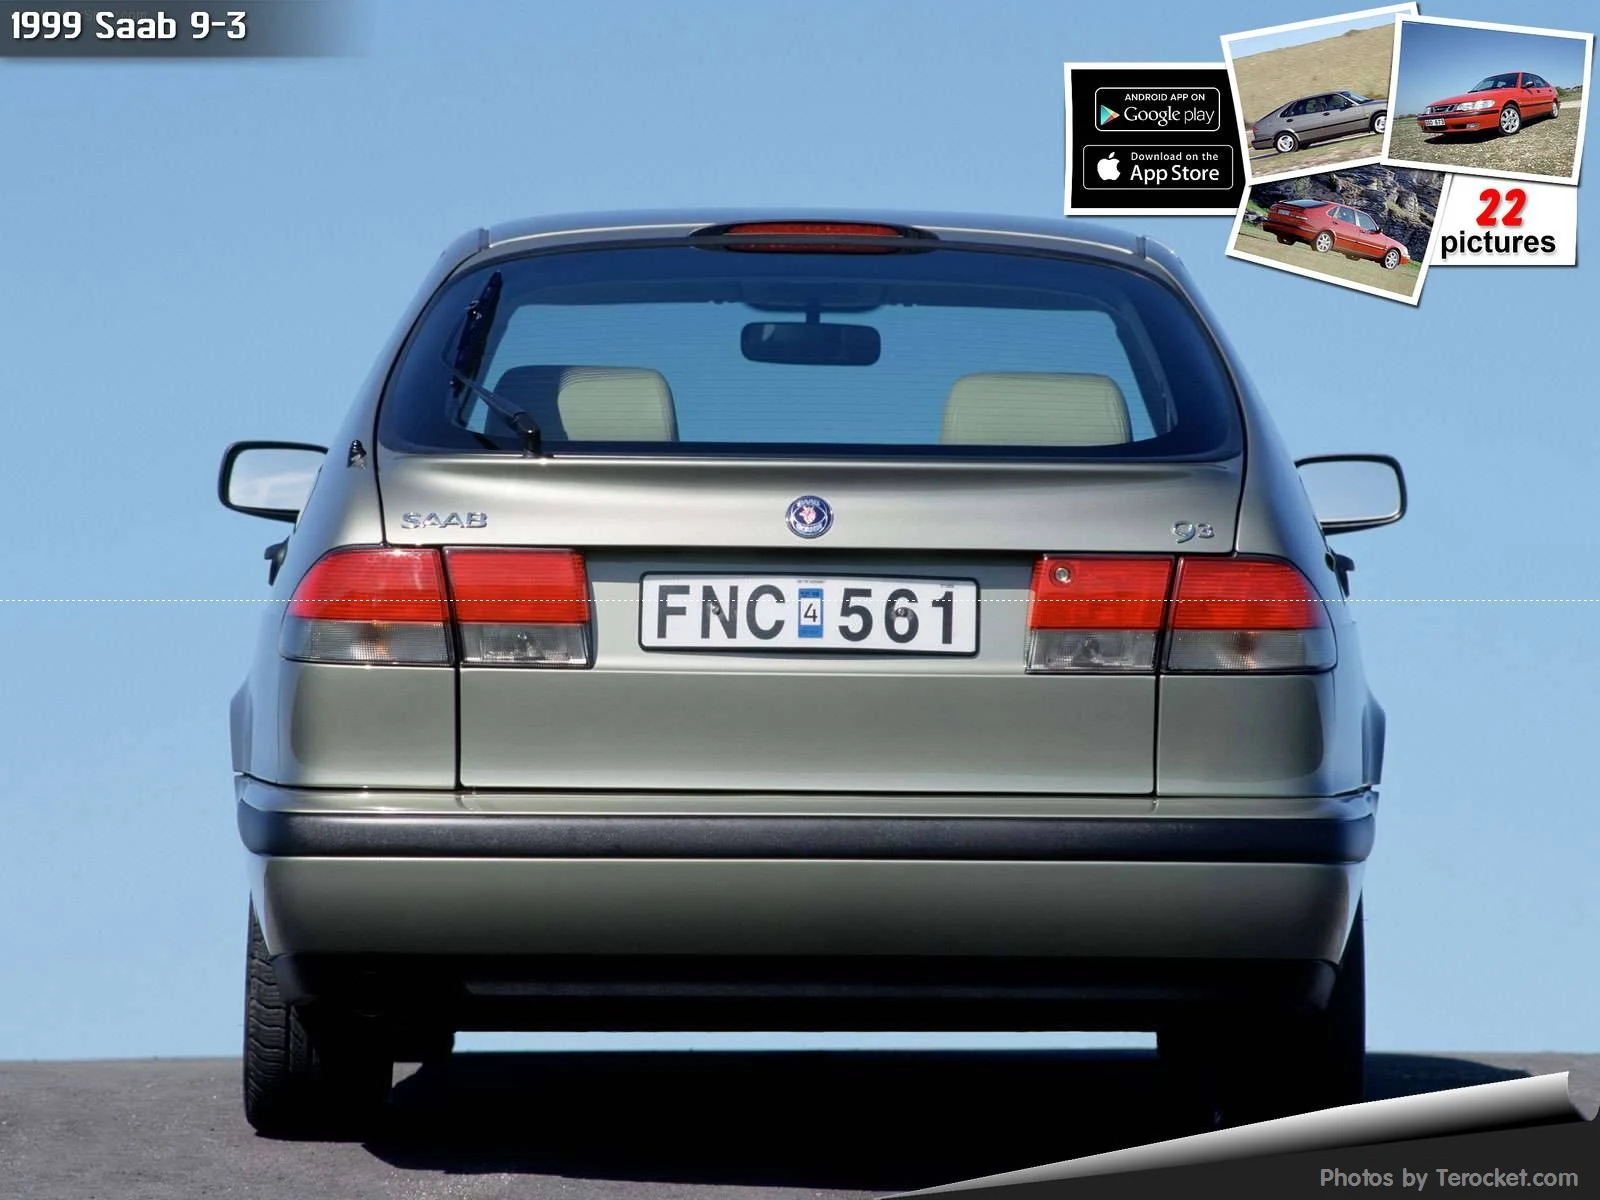 Hình ảnh xe ô tô Saab 9-3 1999 & nội ngoại thất